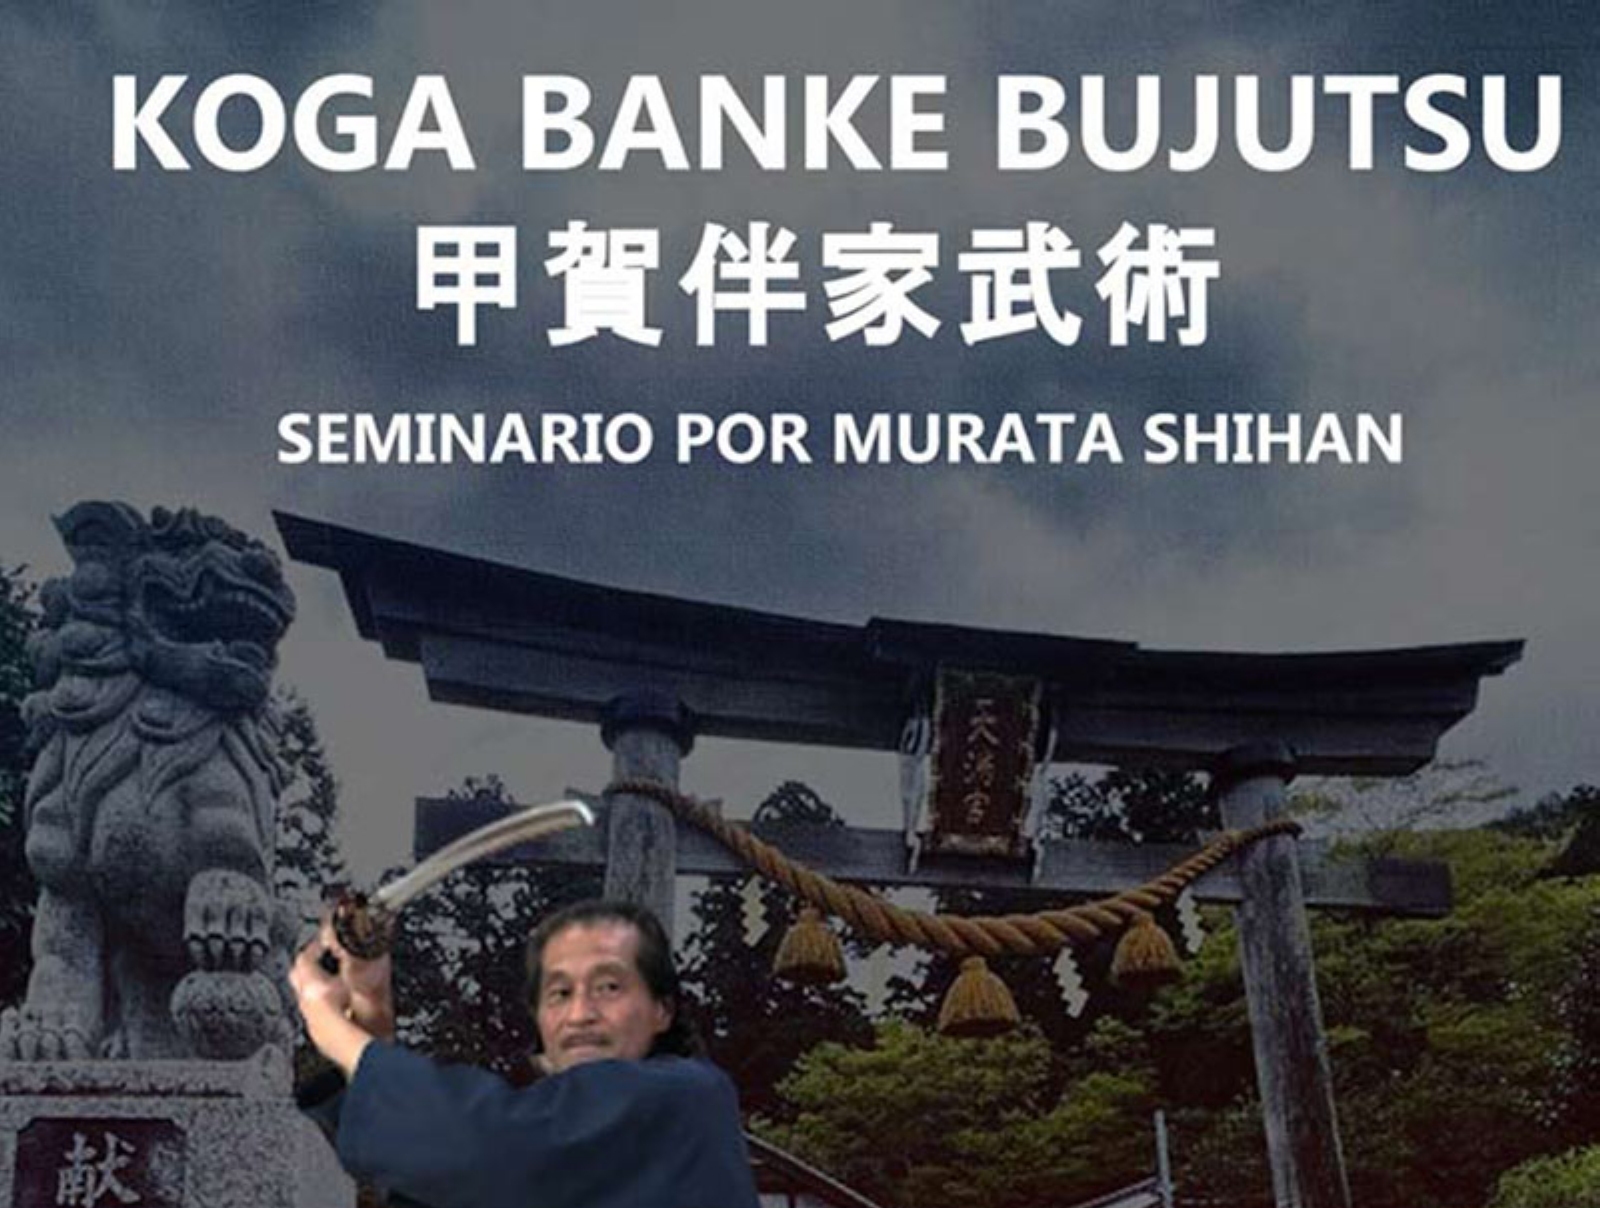 Seminario a cargo de Murata Shihan (Koga Banke Bujutsu)